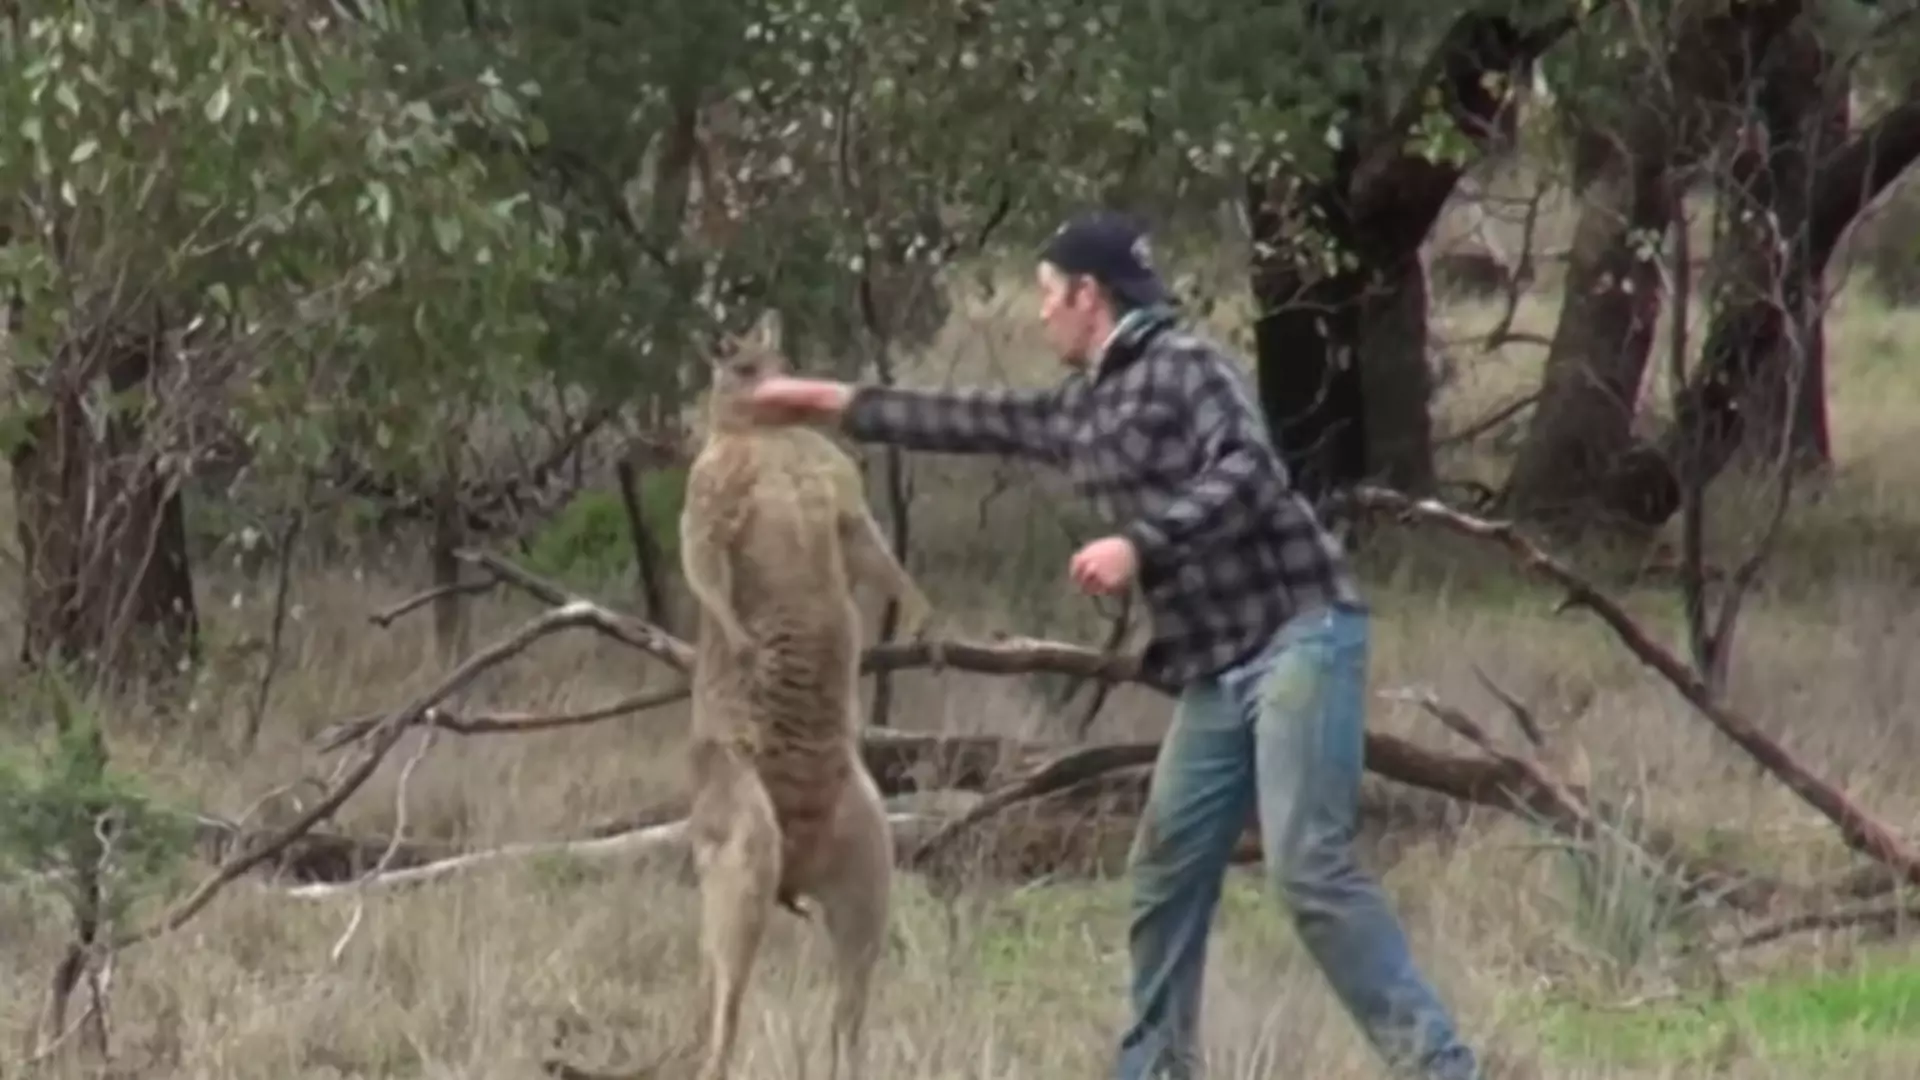 Śmiejemy się z „walki” mężczyzny z kangurem, ale cała historia tego zdarzenia jest niezwykle smutna